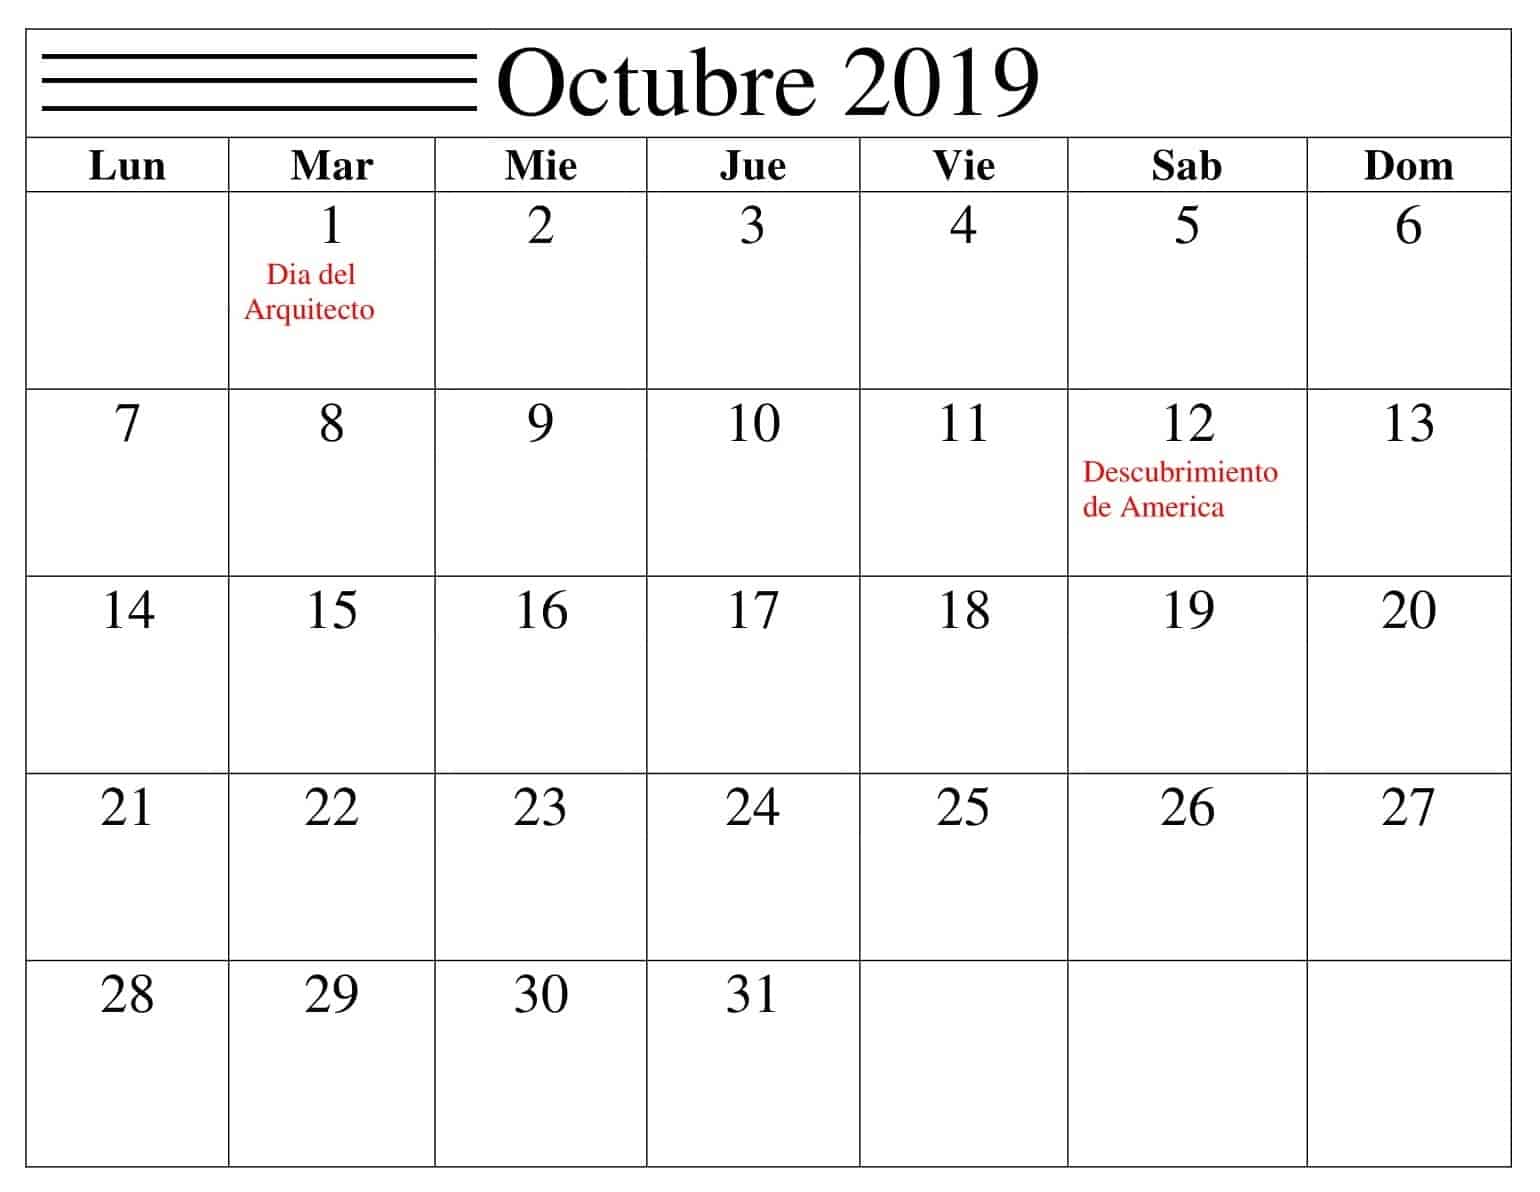  Calendario Octubre 2019 Con Festivos